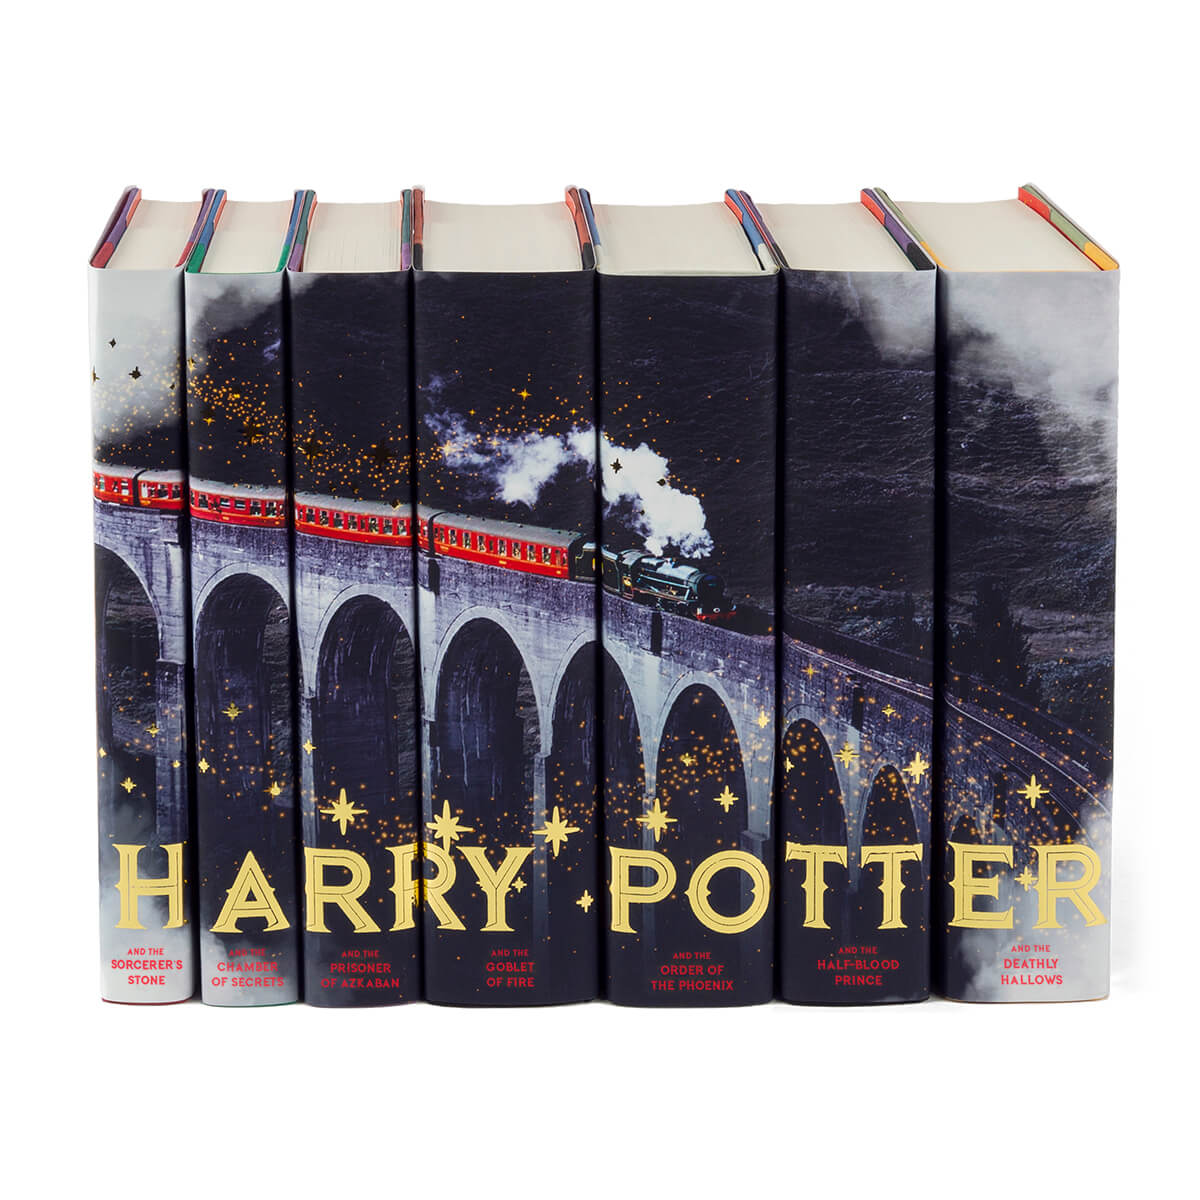 Harry Potter Mashup Book Set  Harry potter book set, Harry potter box set,  Harry potter books